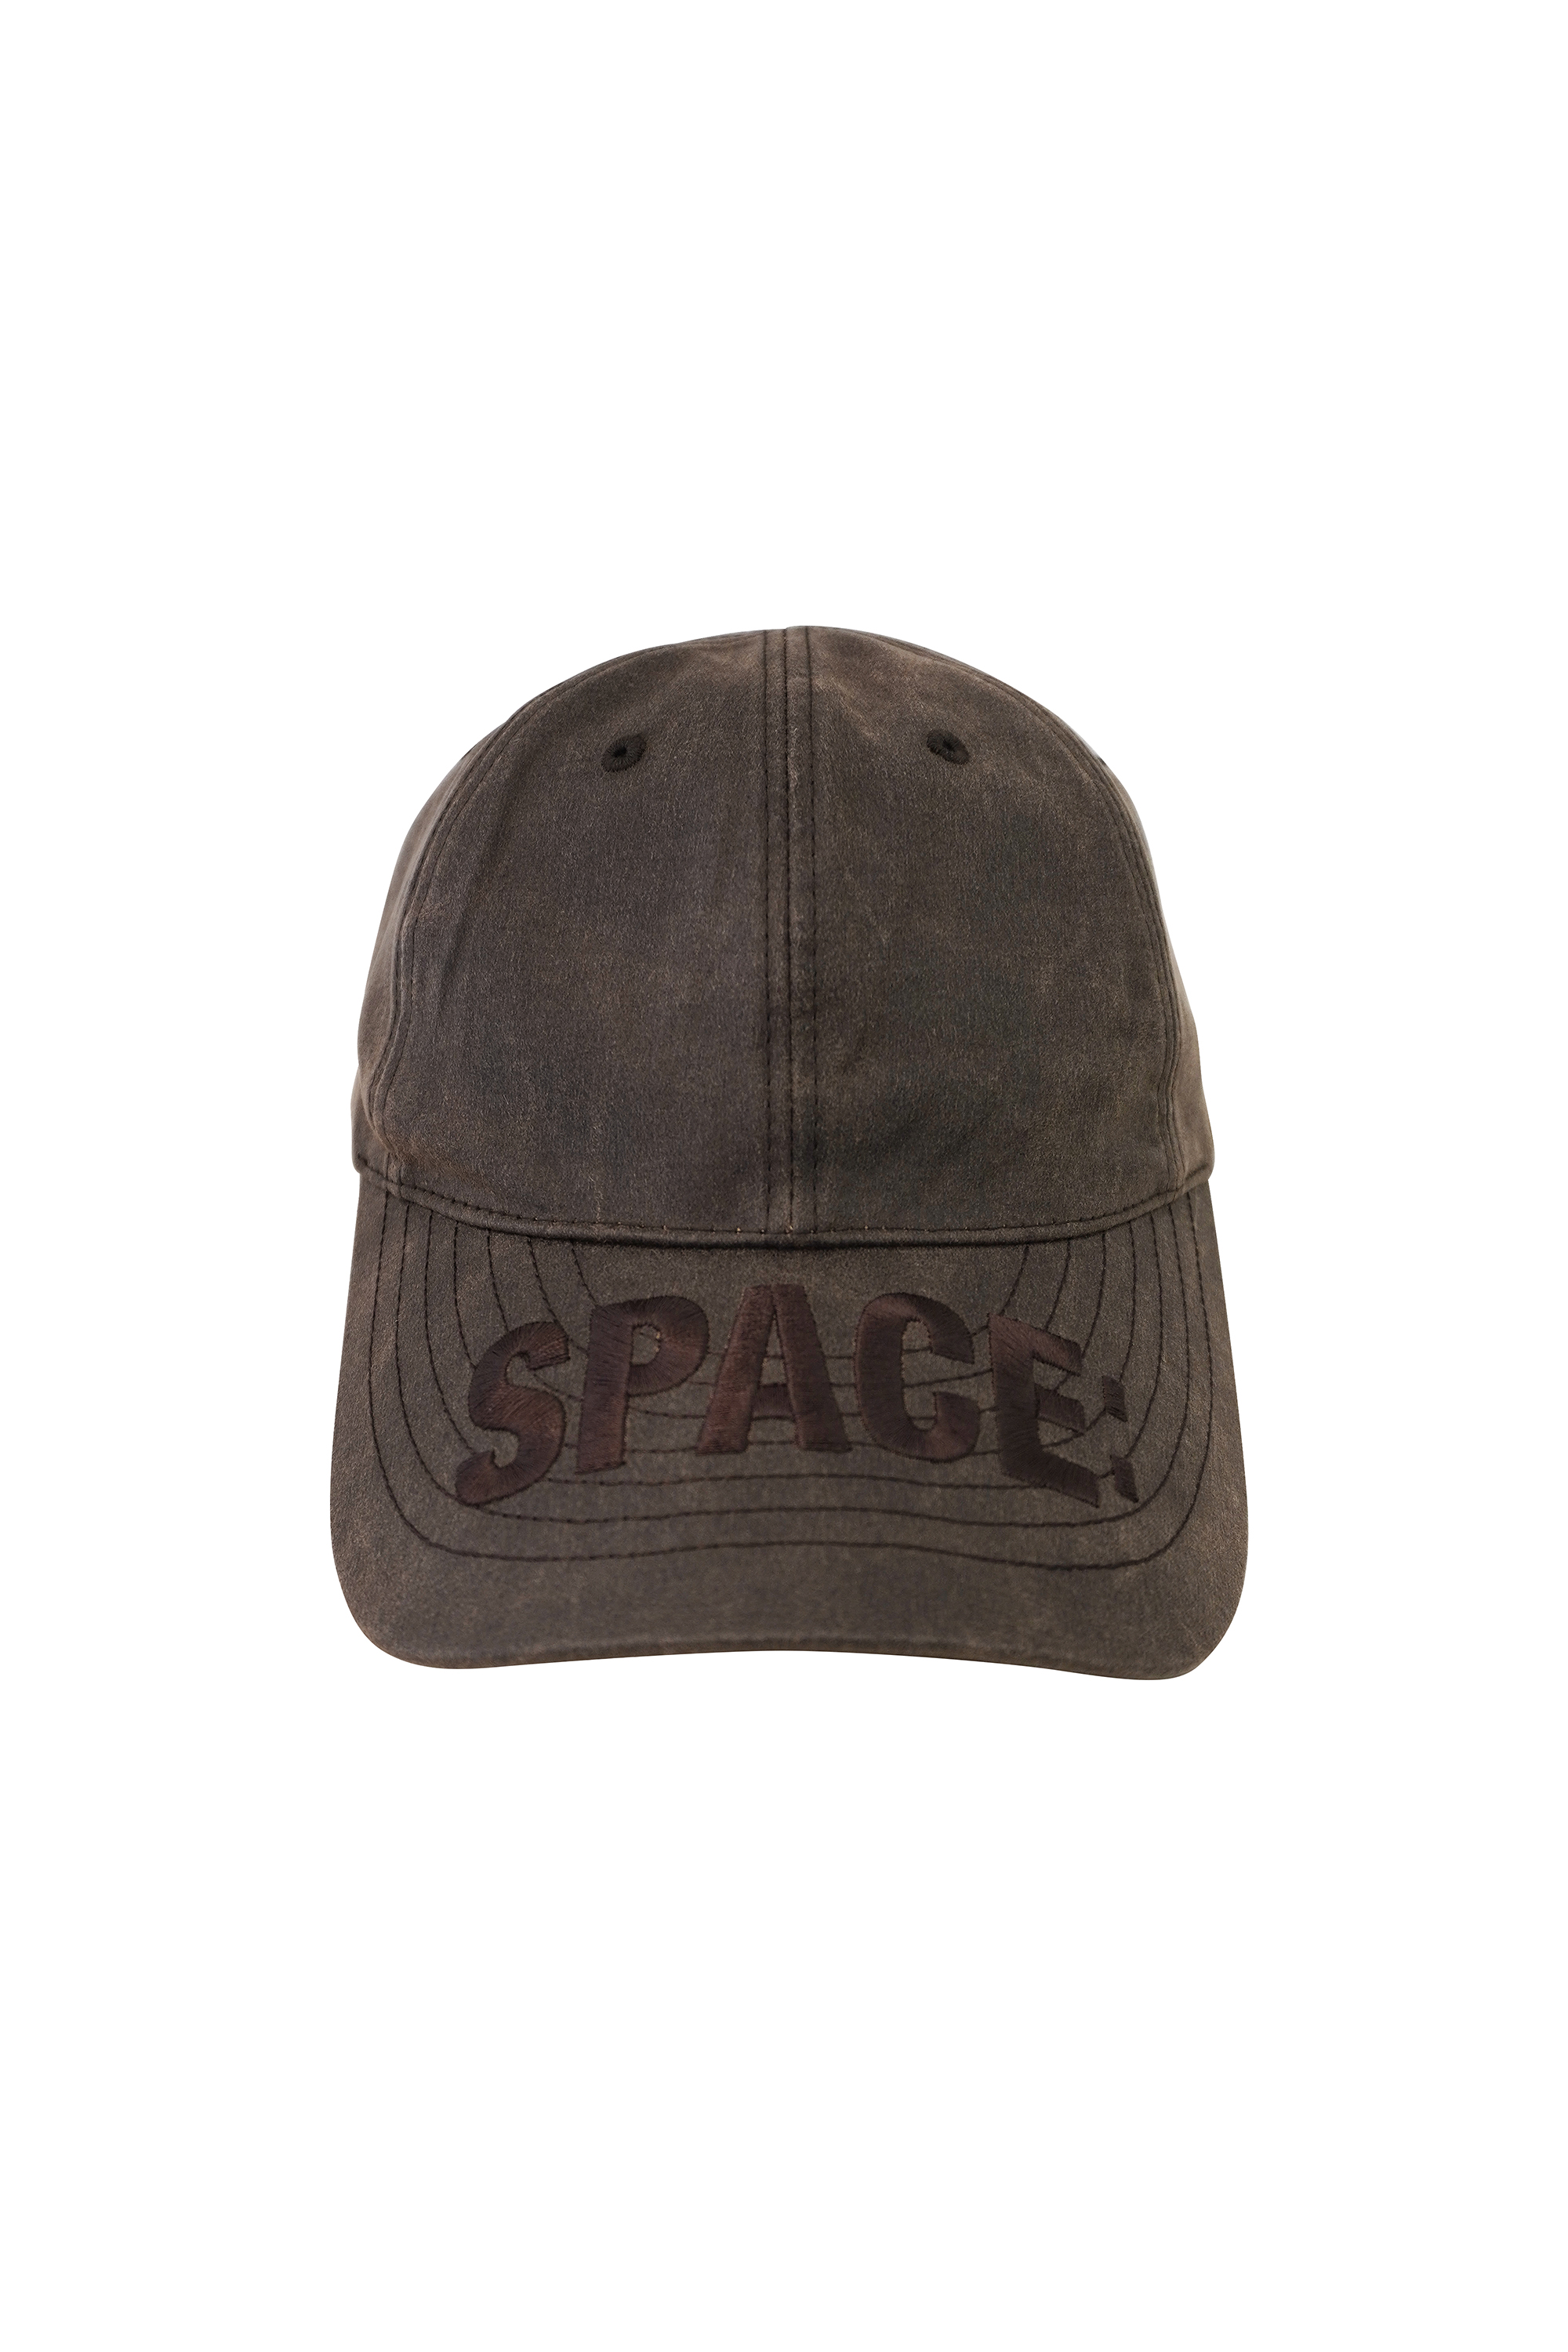 FAR SPACE CAP_BROWN